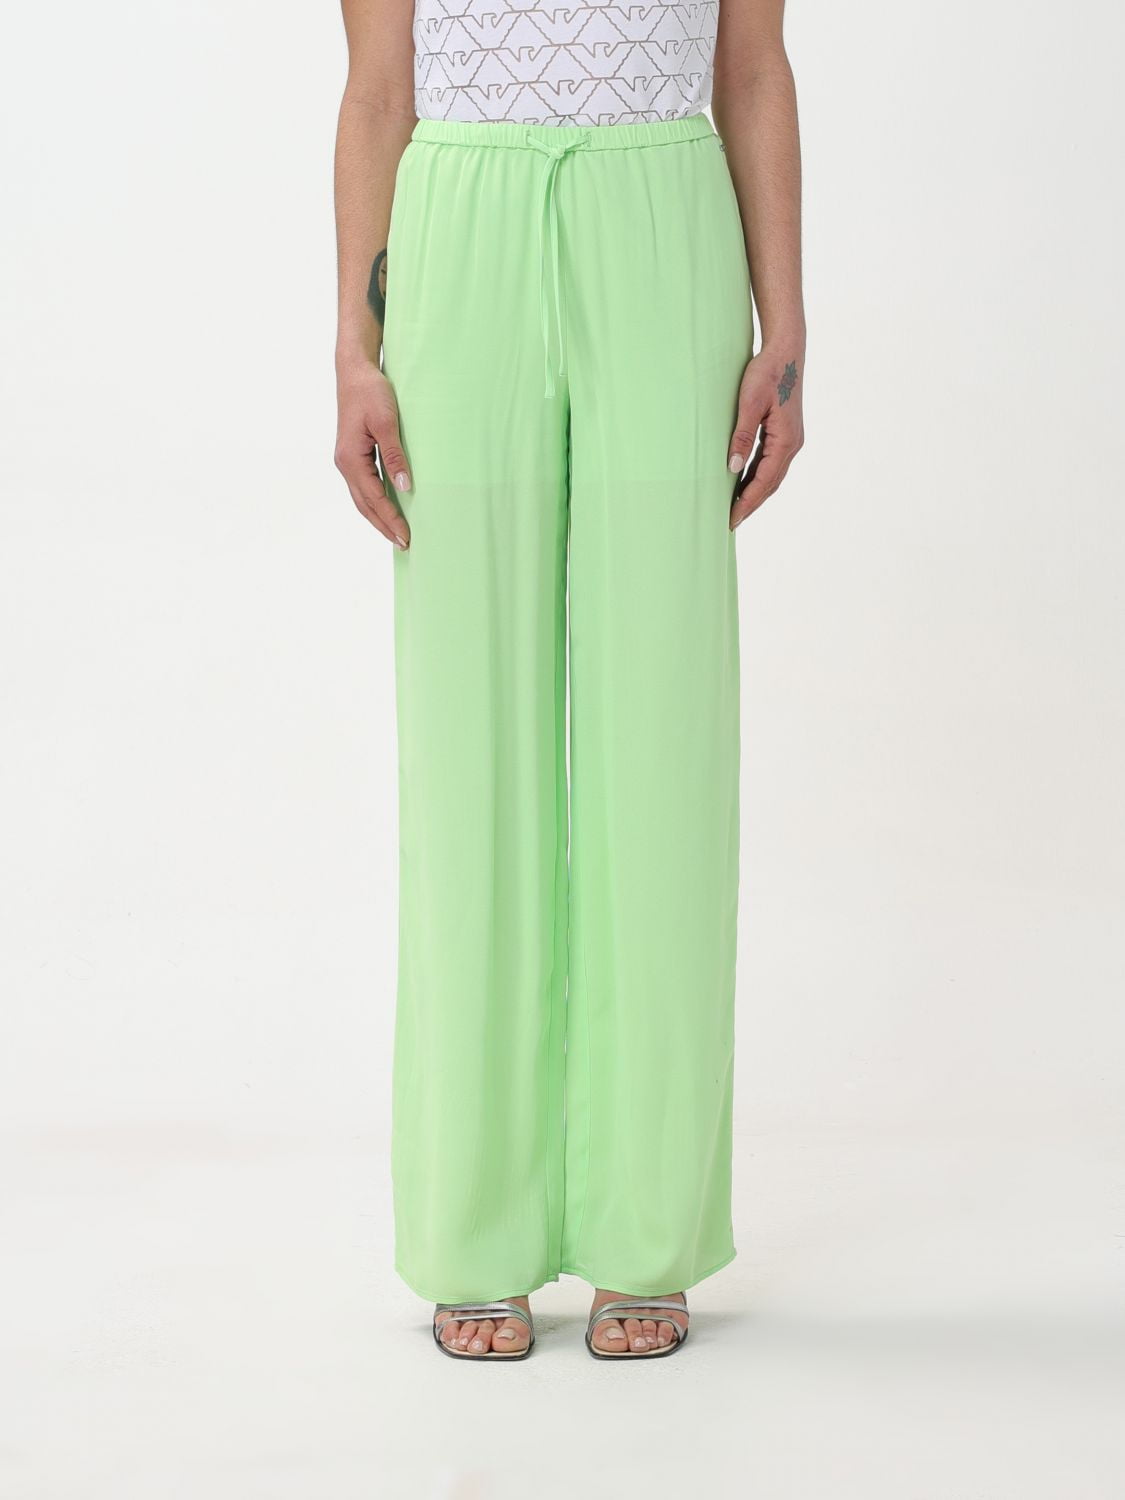 Armani Exchange Pants Woman Green Woman - Walmart.com